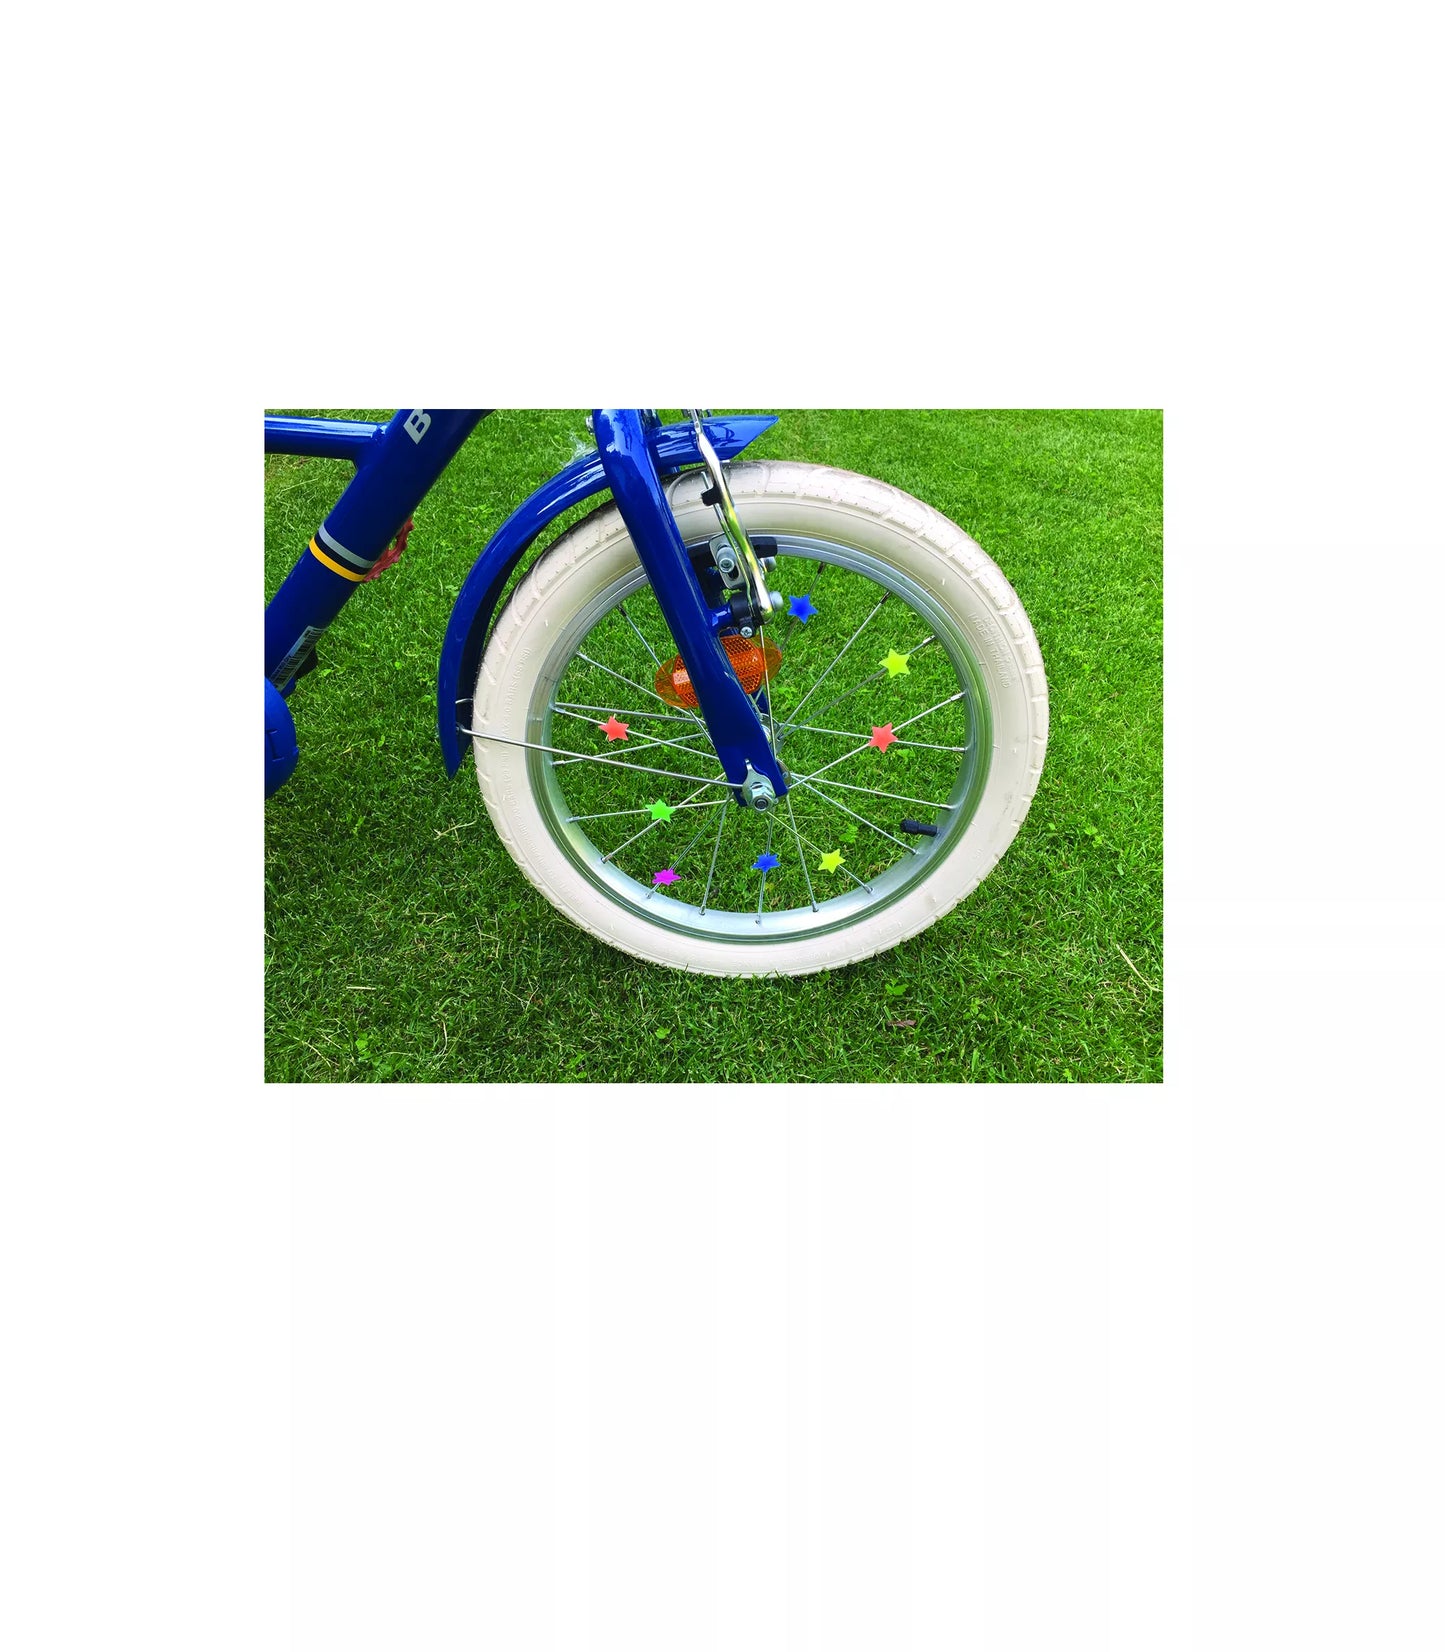 Décorations multicolores pour roues de vélo - Ratatam